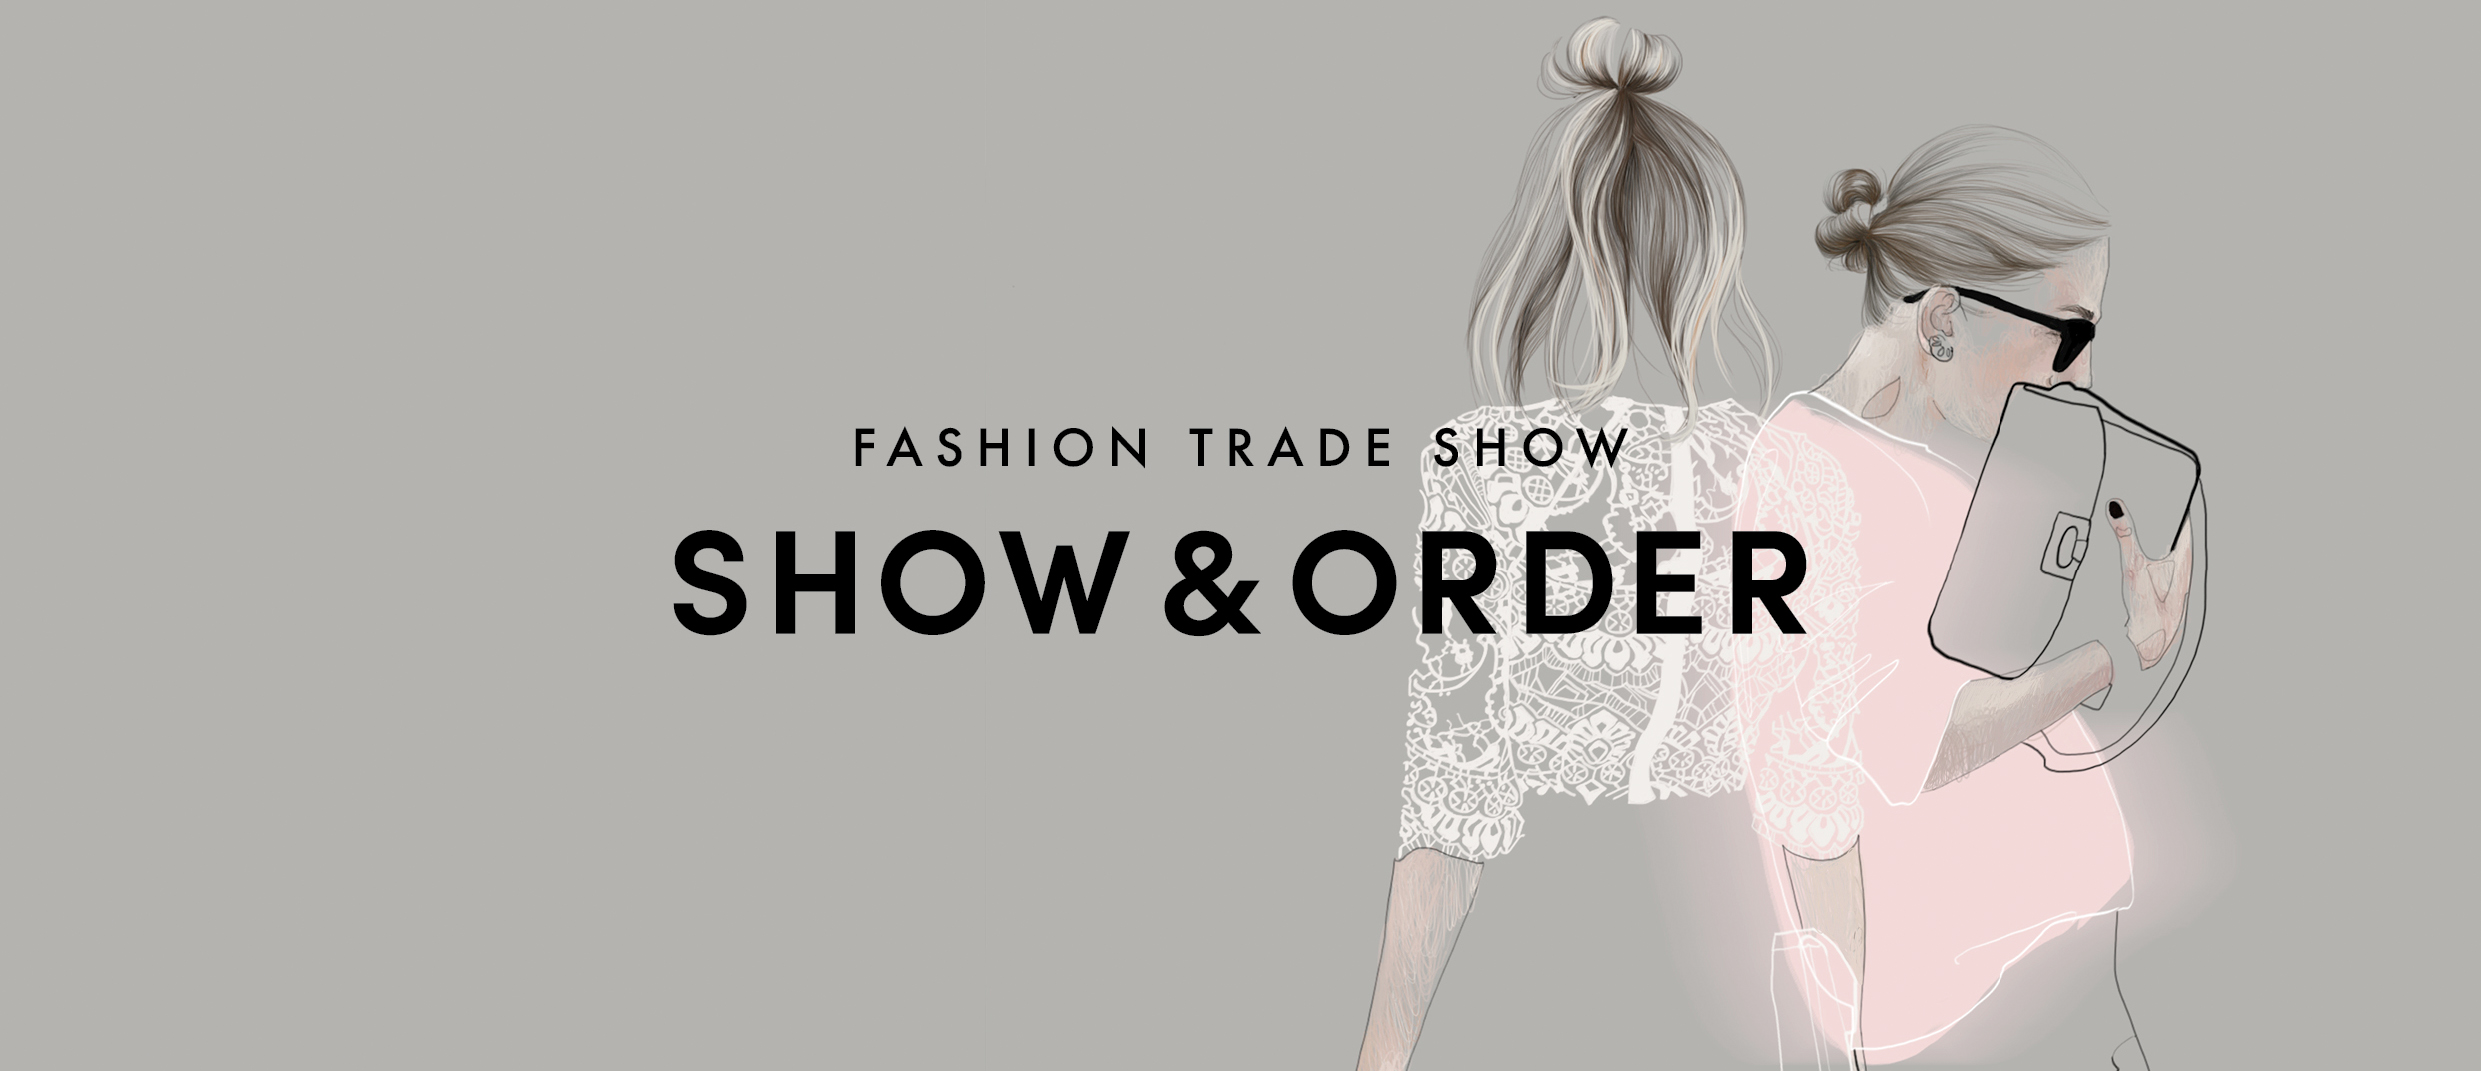 Fashion Trade Show